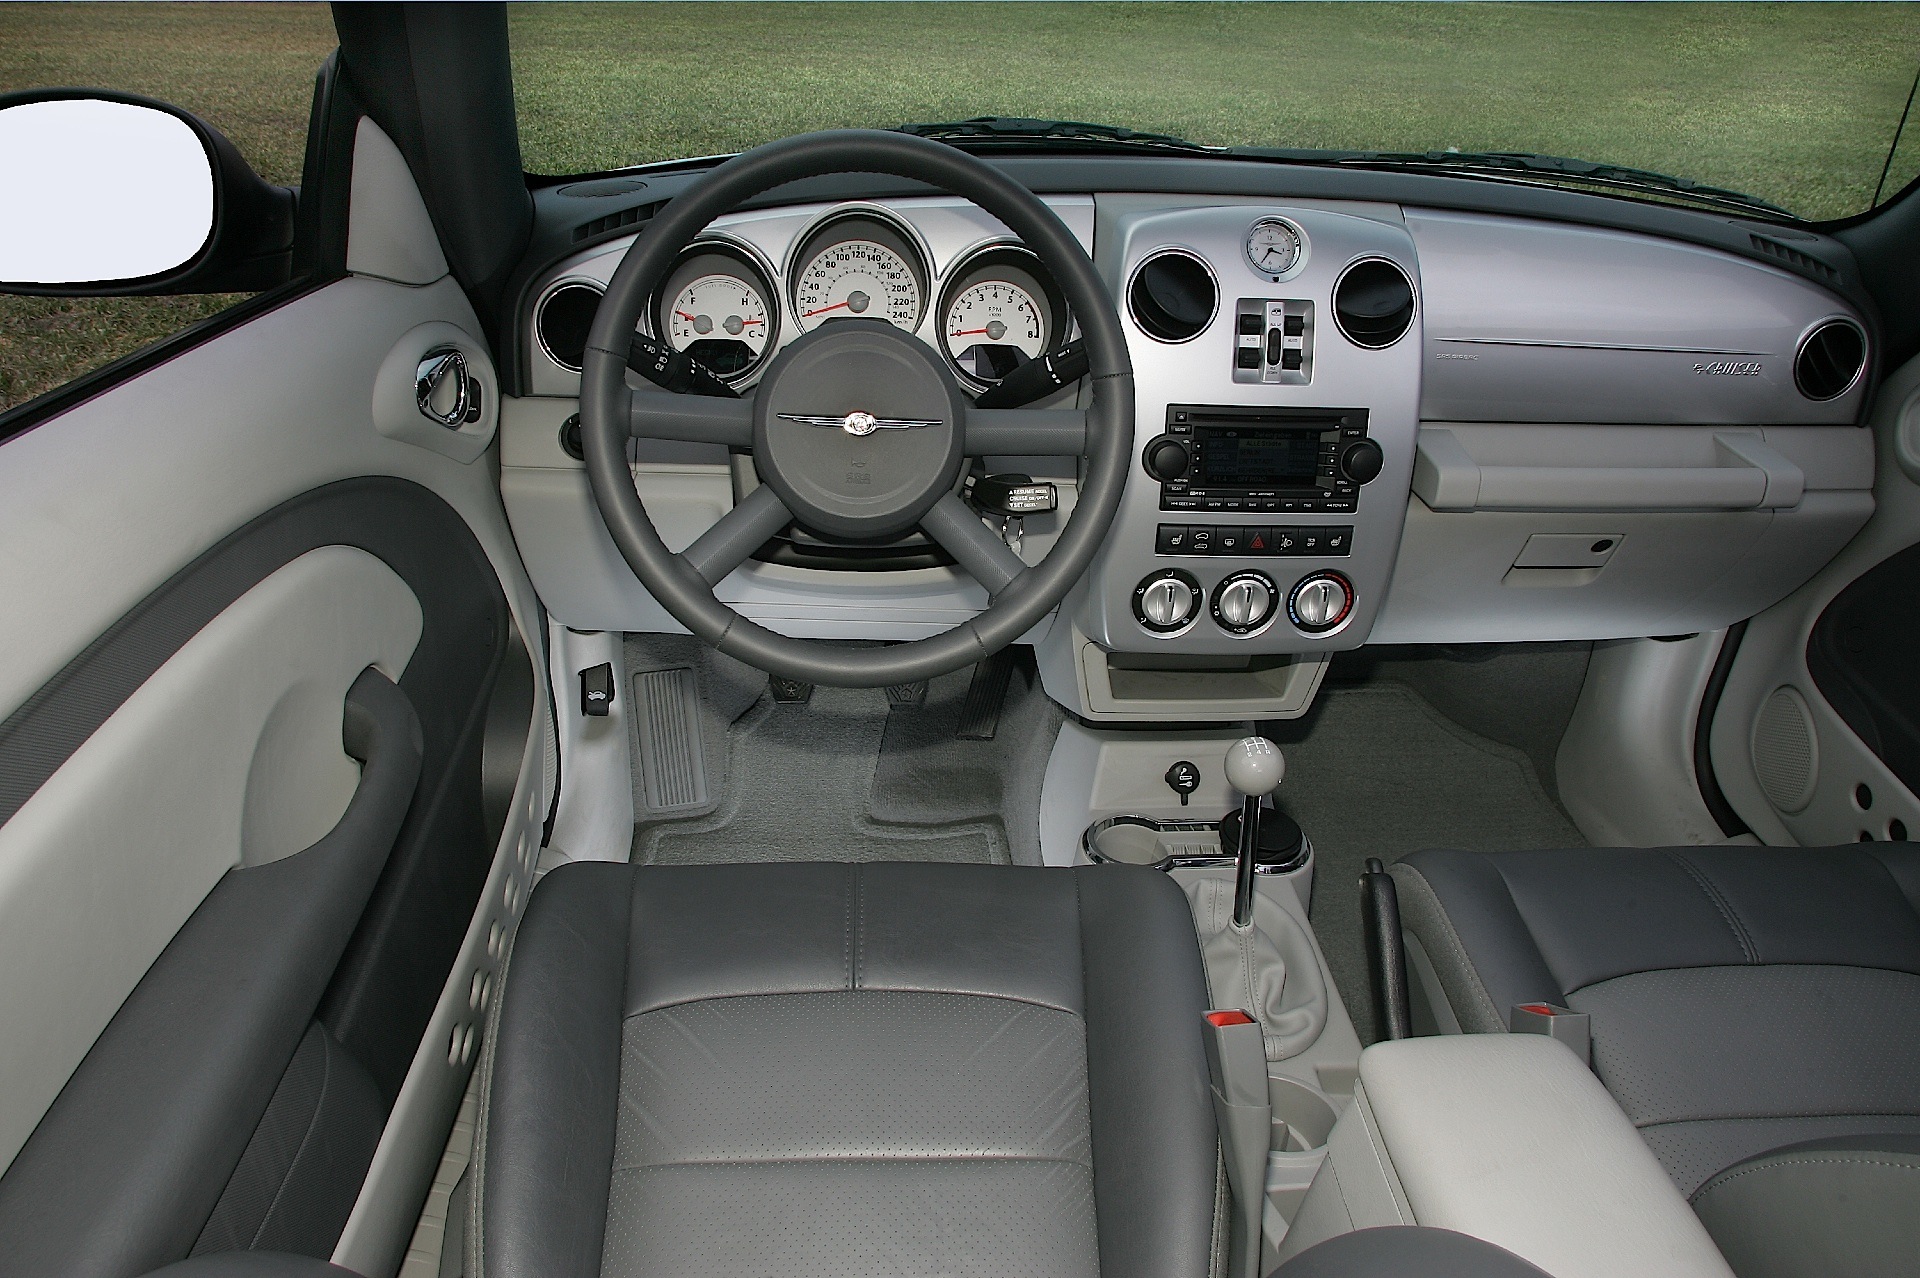 2005 pt cruiser interior